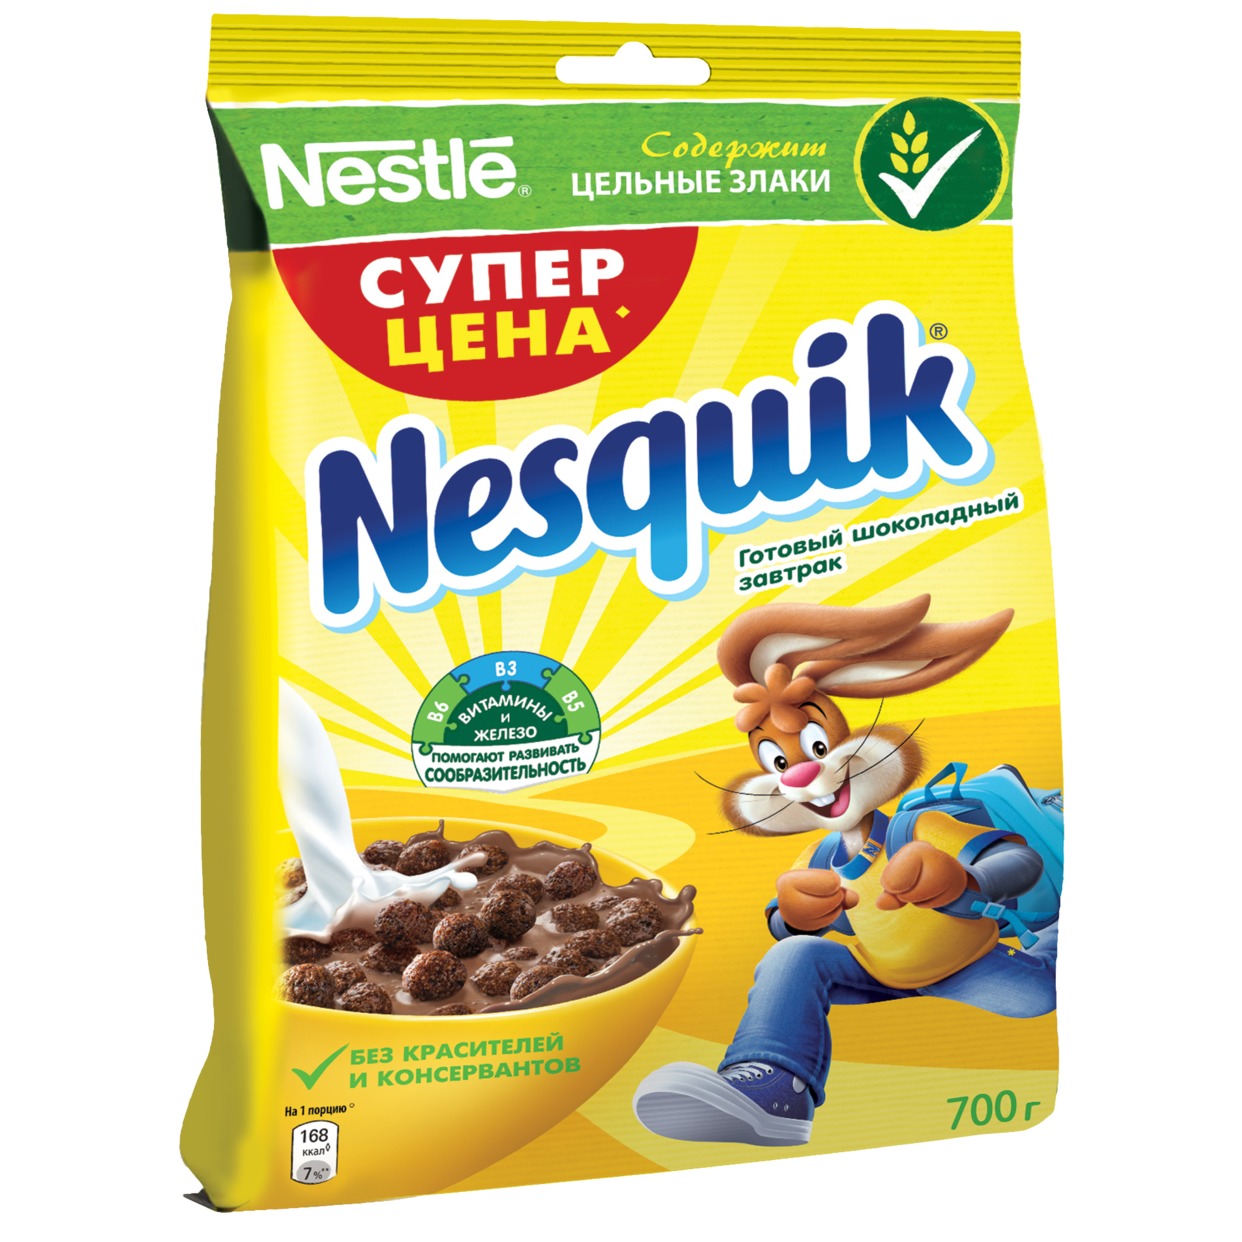 Завтрак шоколадный, готовый, Nesquick, 700 г